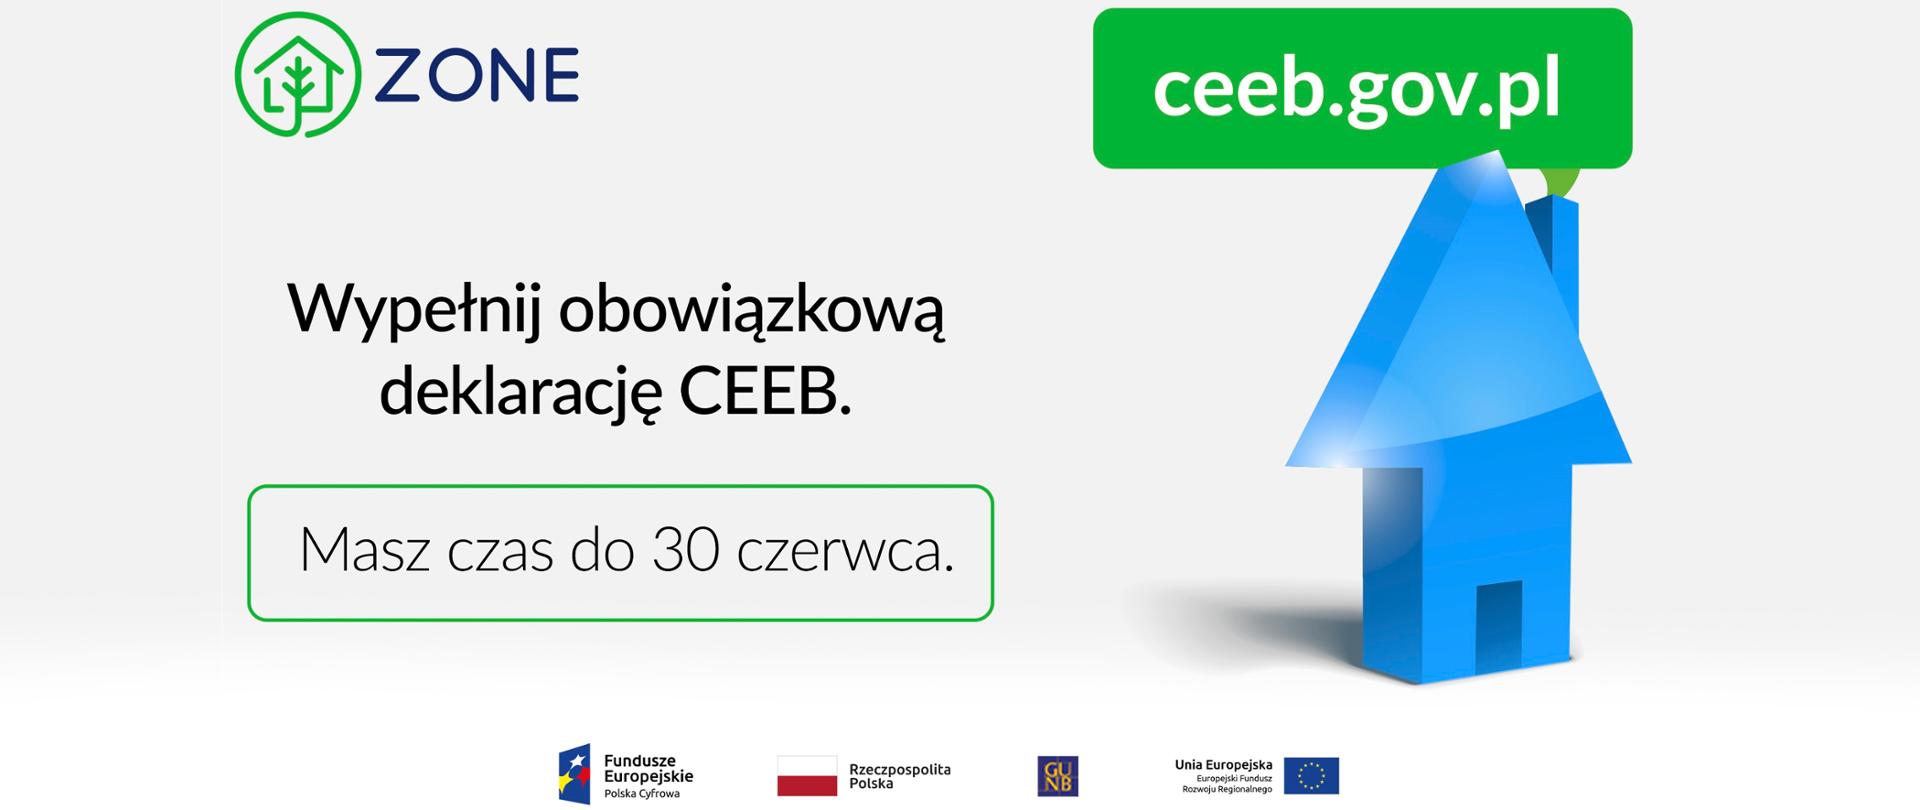 Złóż deklarację o sposobie ogrzewania - napis i grafika domu. Logo ZONE i logo Unii Europejskiej